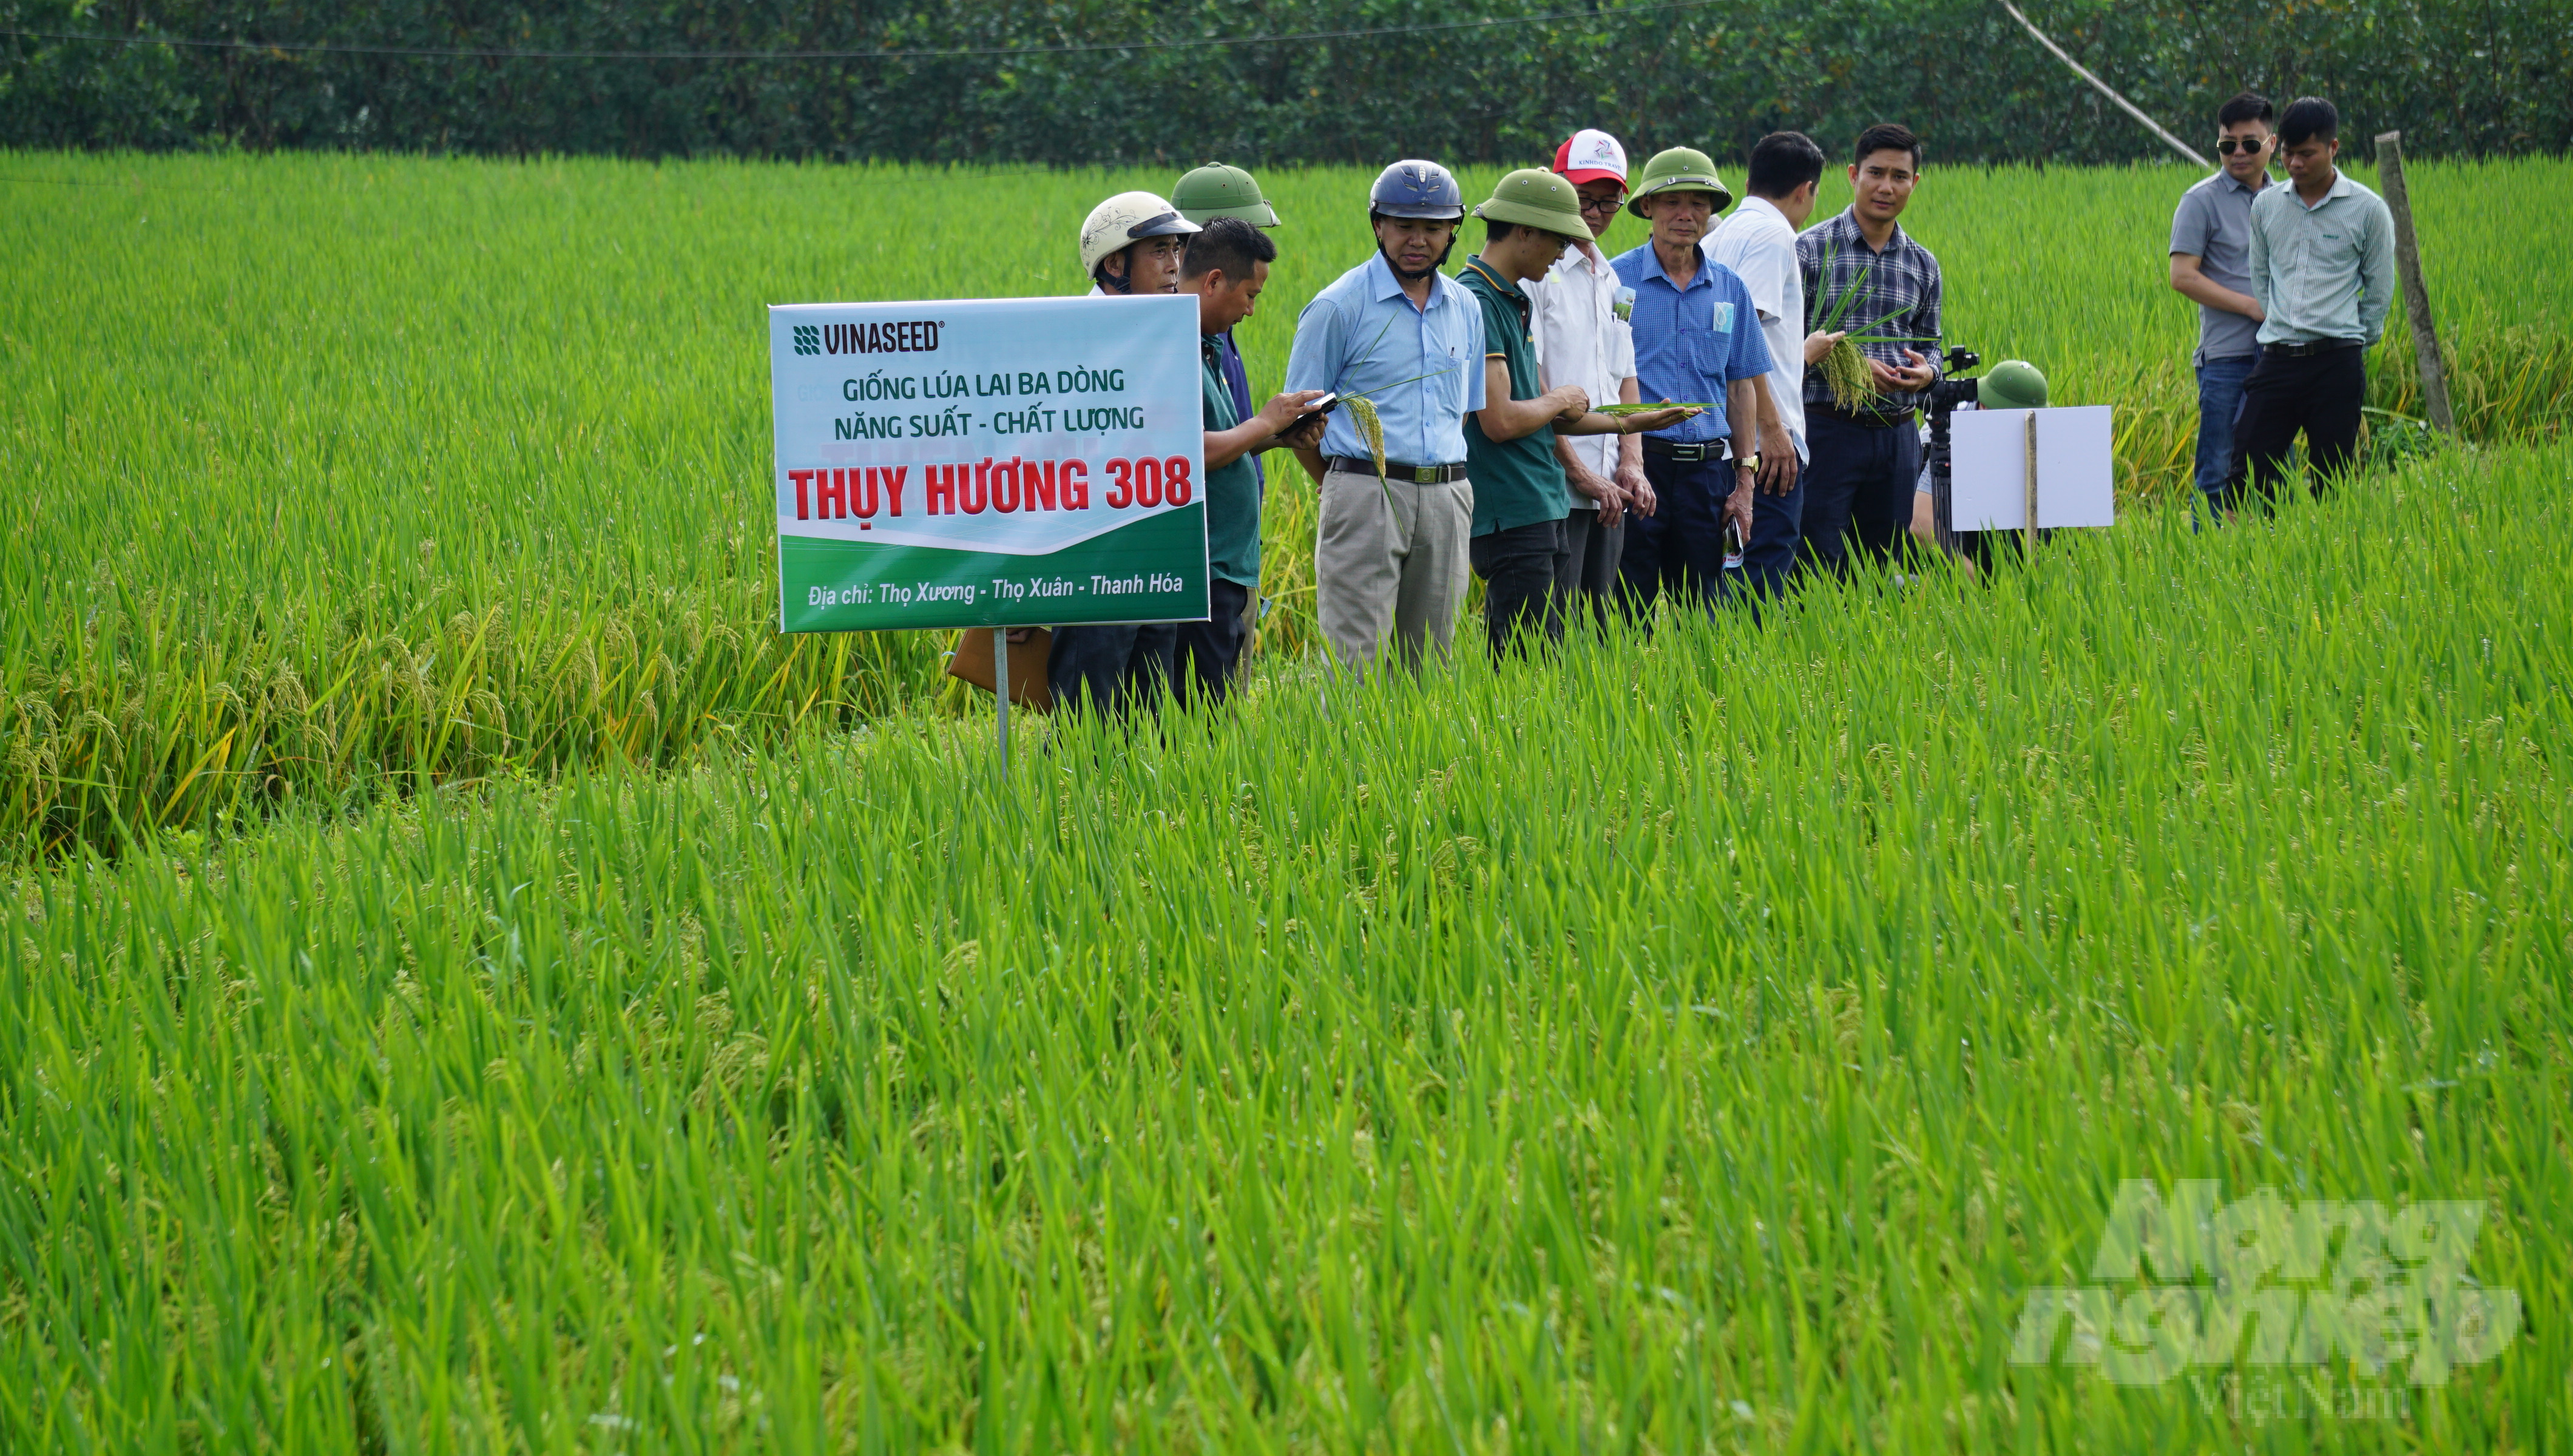 Giống lúa Thụy Hương 308 đã có mặt tại nhiều địa phương trong tỉnh Thanh Hóa. Ảnh: Quốc Toản.